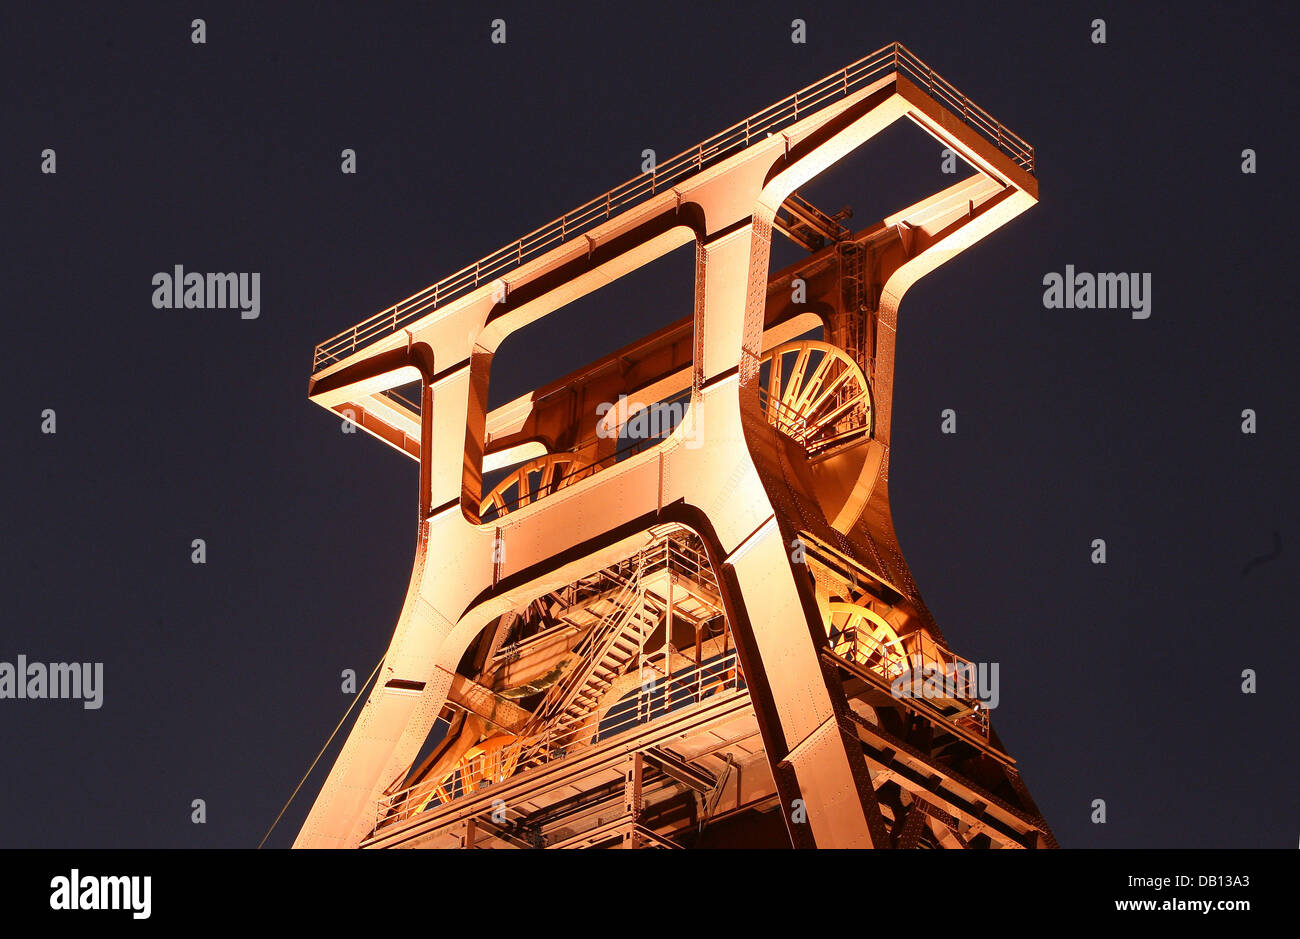 Il salpamento-quadro, simbolo dell'ex miniera di carbone Zollverein, sorge nel cielo di Essen, in Germania, il 25 ottobre 2007. Il cosiddetto "carbone round" aveva deciso nel 1983 di chiudere la miniera di carbone che ha impiegato 5 mila persone e dissotterrato fino a 12.000 tonnellate di carbone al giorno. Oggi il complesso industriale delle Miniere di carbone dello Zollverein è sul sito Patrimonio Mondiale dell'UNESCO lista per la sua eccezionale Foto Stock